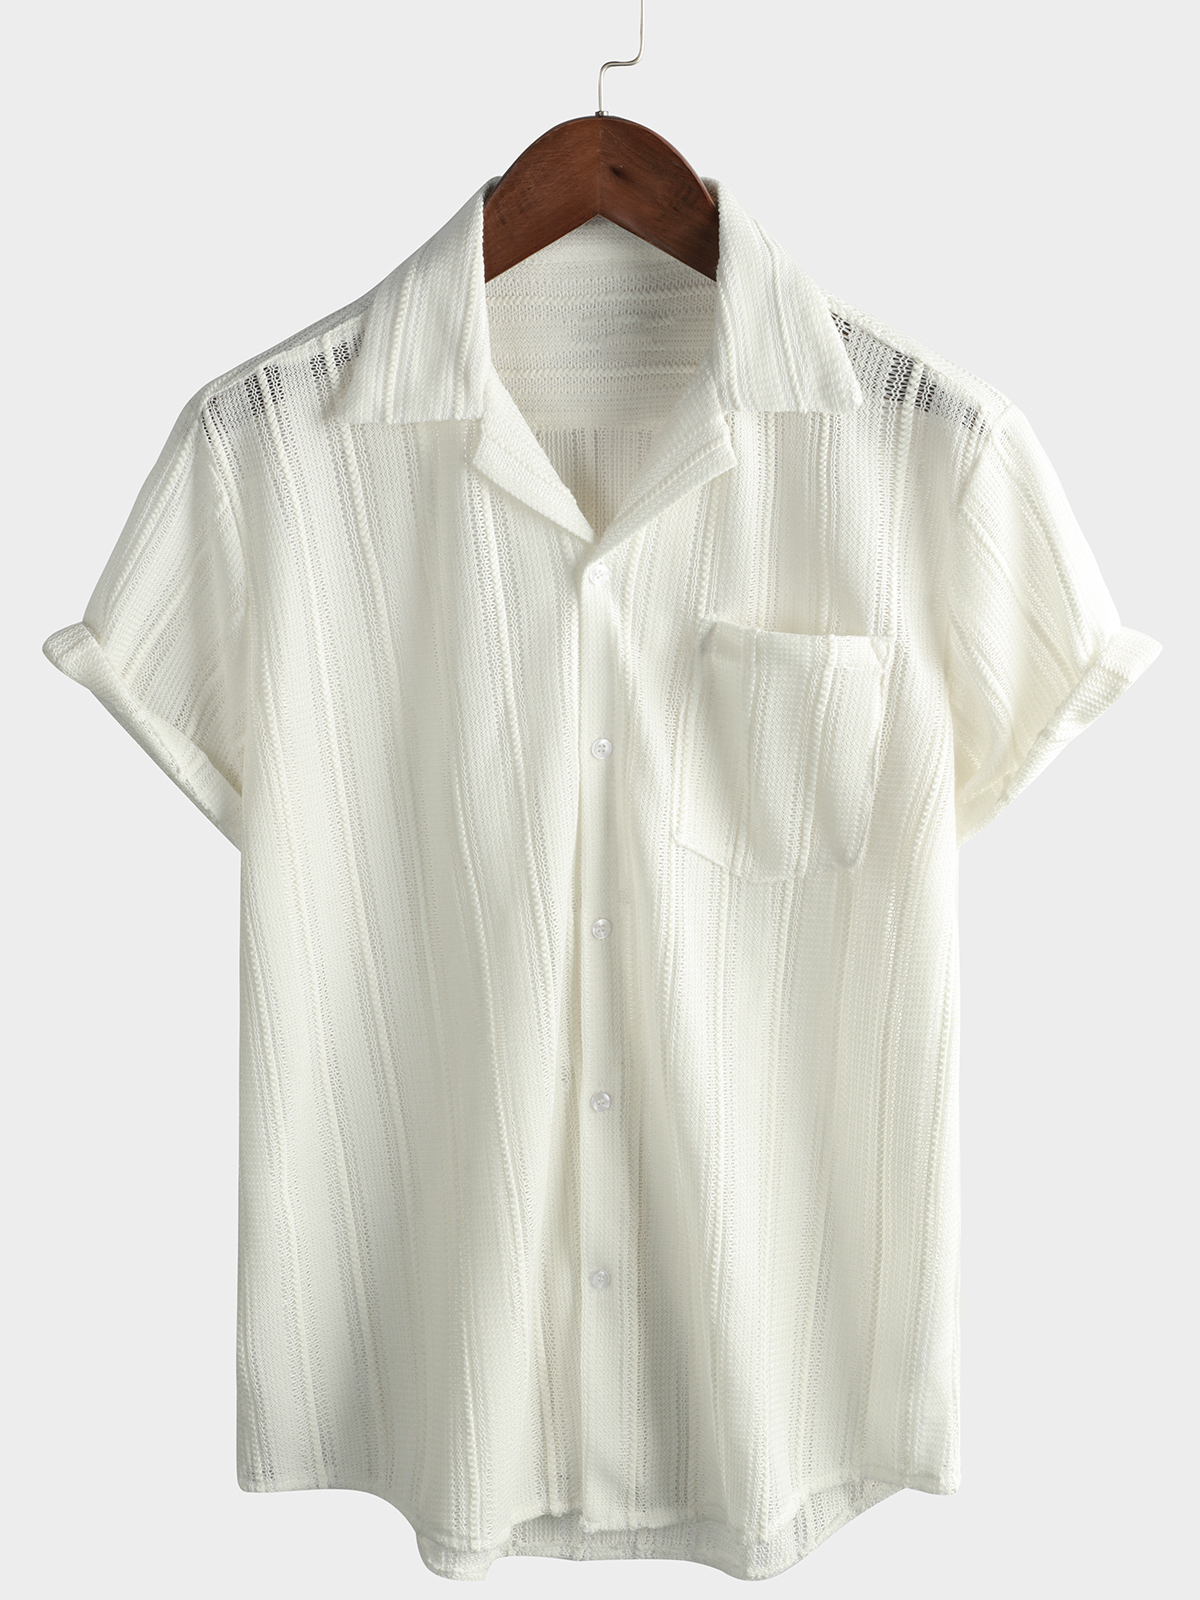 Men's Summer Lace Short Sleeve Casual Button Up Beach Shirt